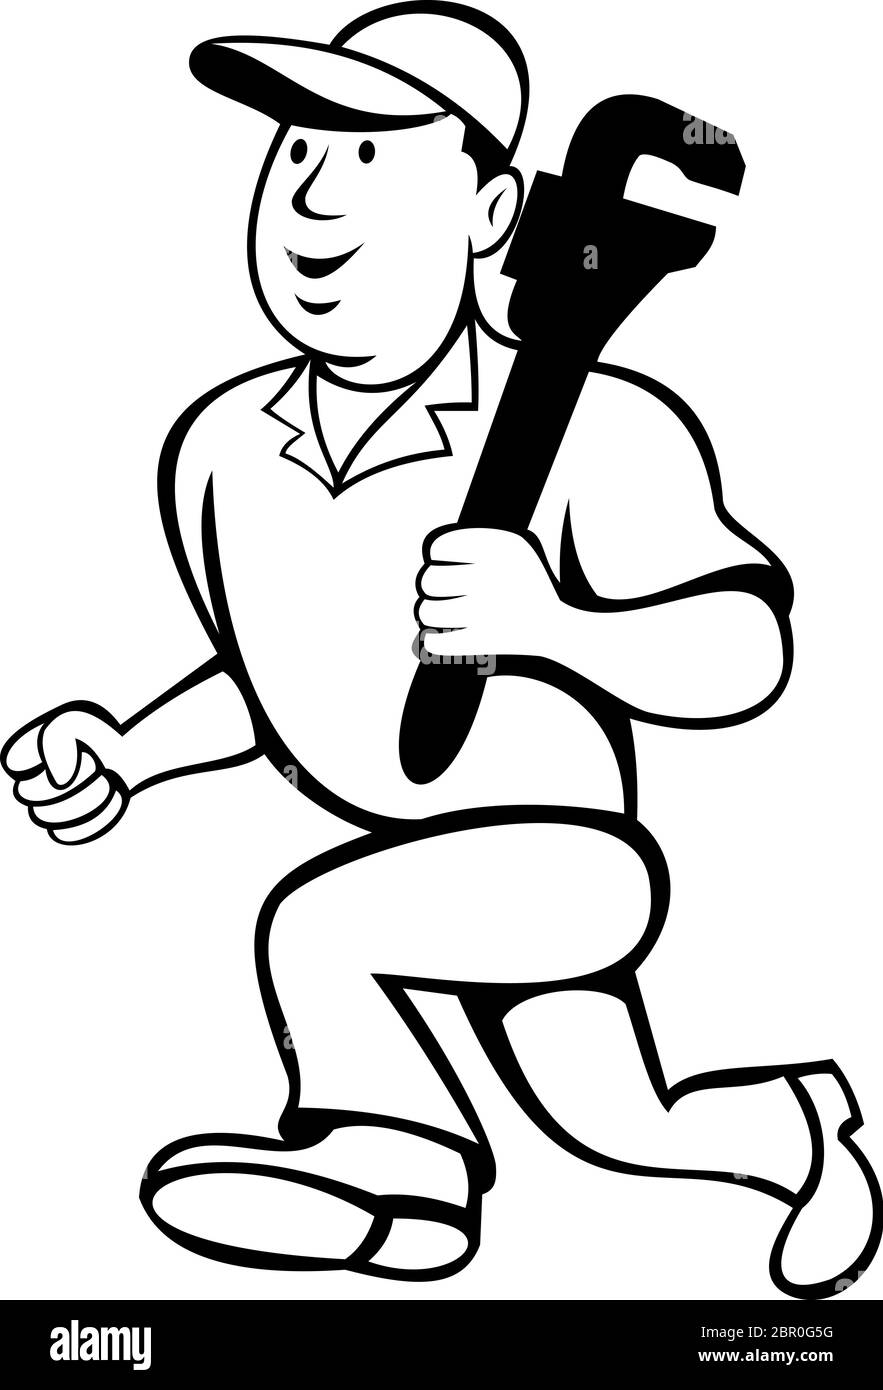 Illustration de style caricature d'un plombier ou d'un homme de main tenant une clé à singe et fonctionnant sur un fond blanc isolé fait en noir et blanc. Illustration de Vecteur